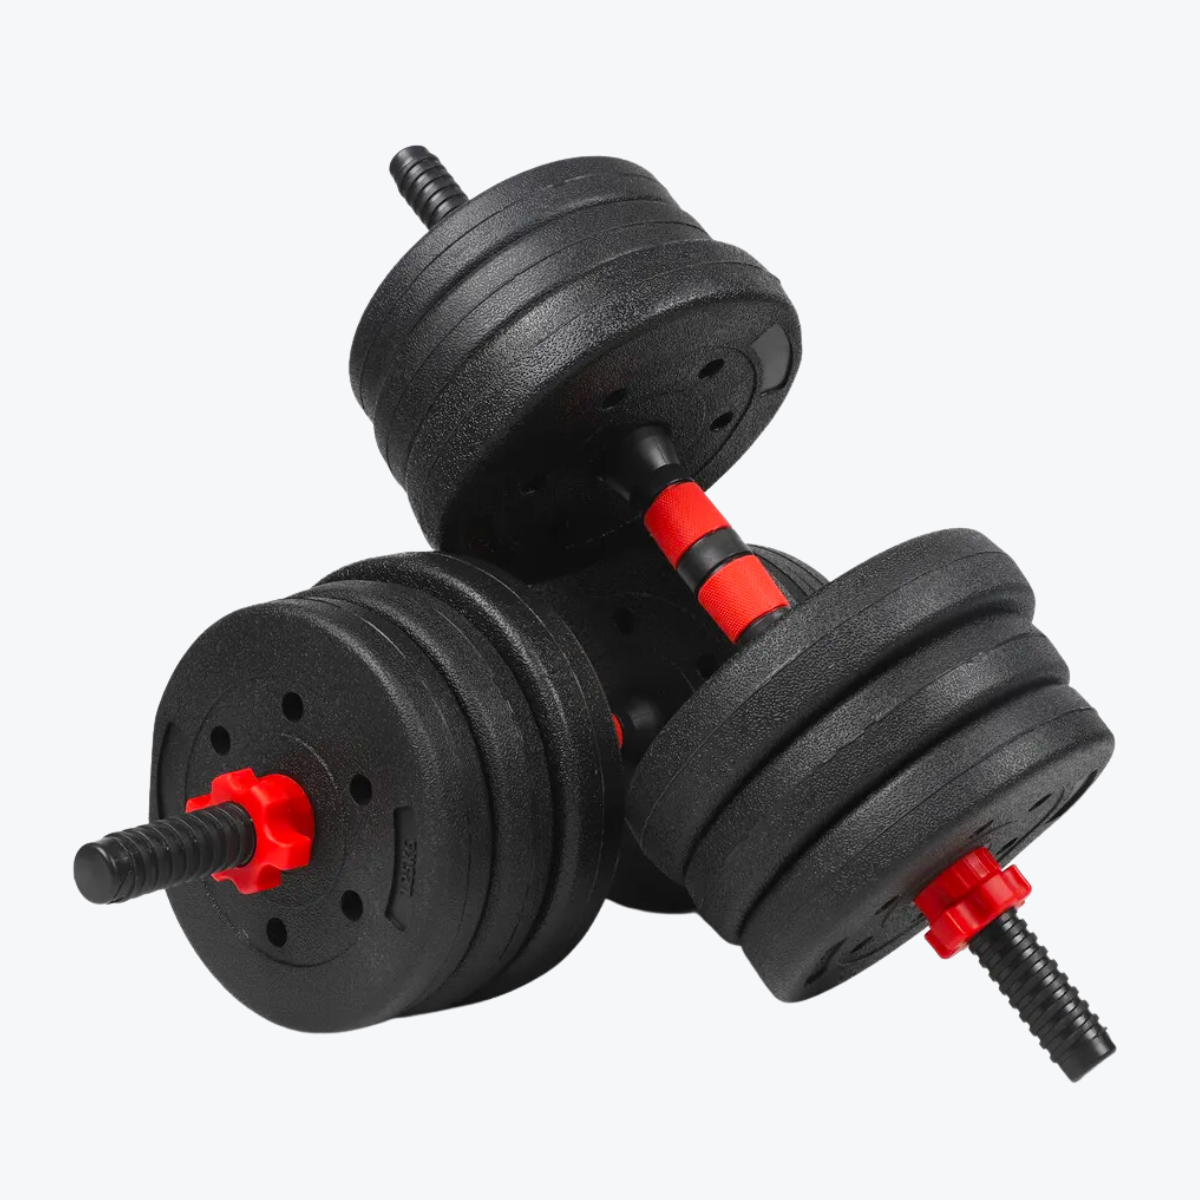 Adjustable Weights Dumbbells Set (20kg - 44lb)